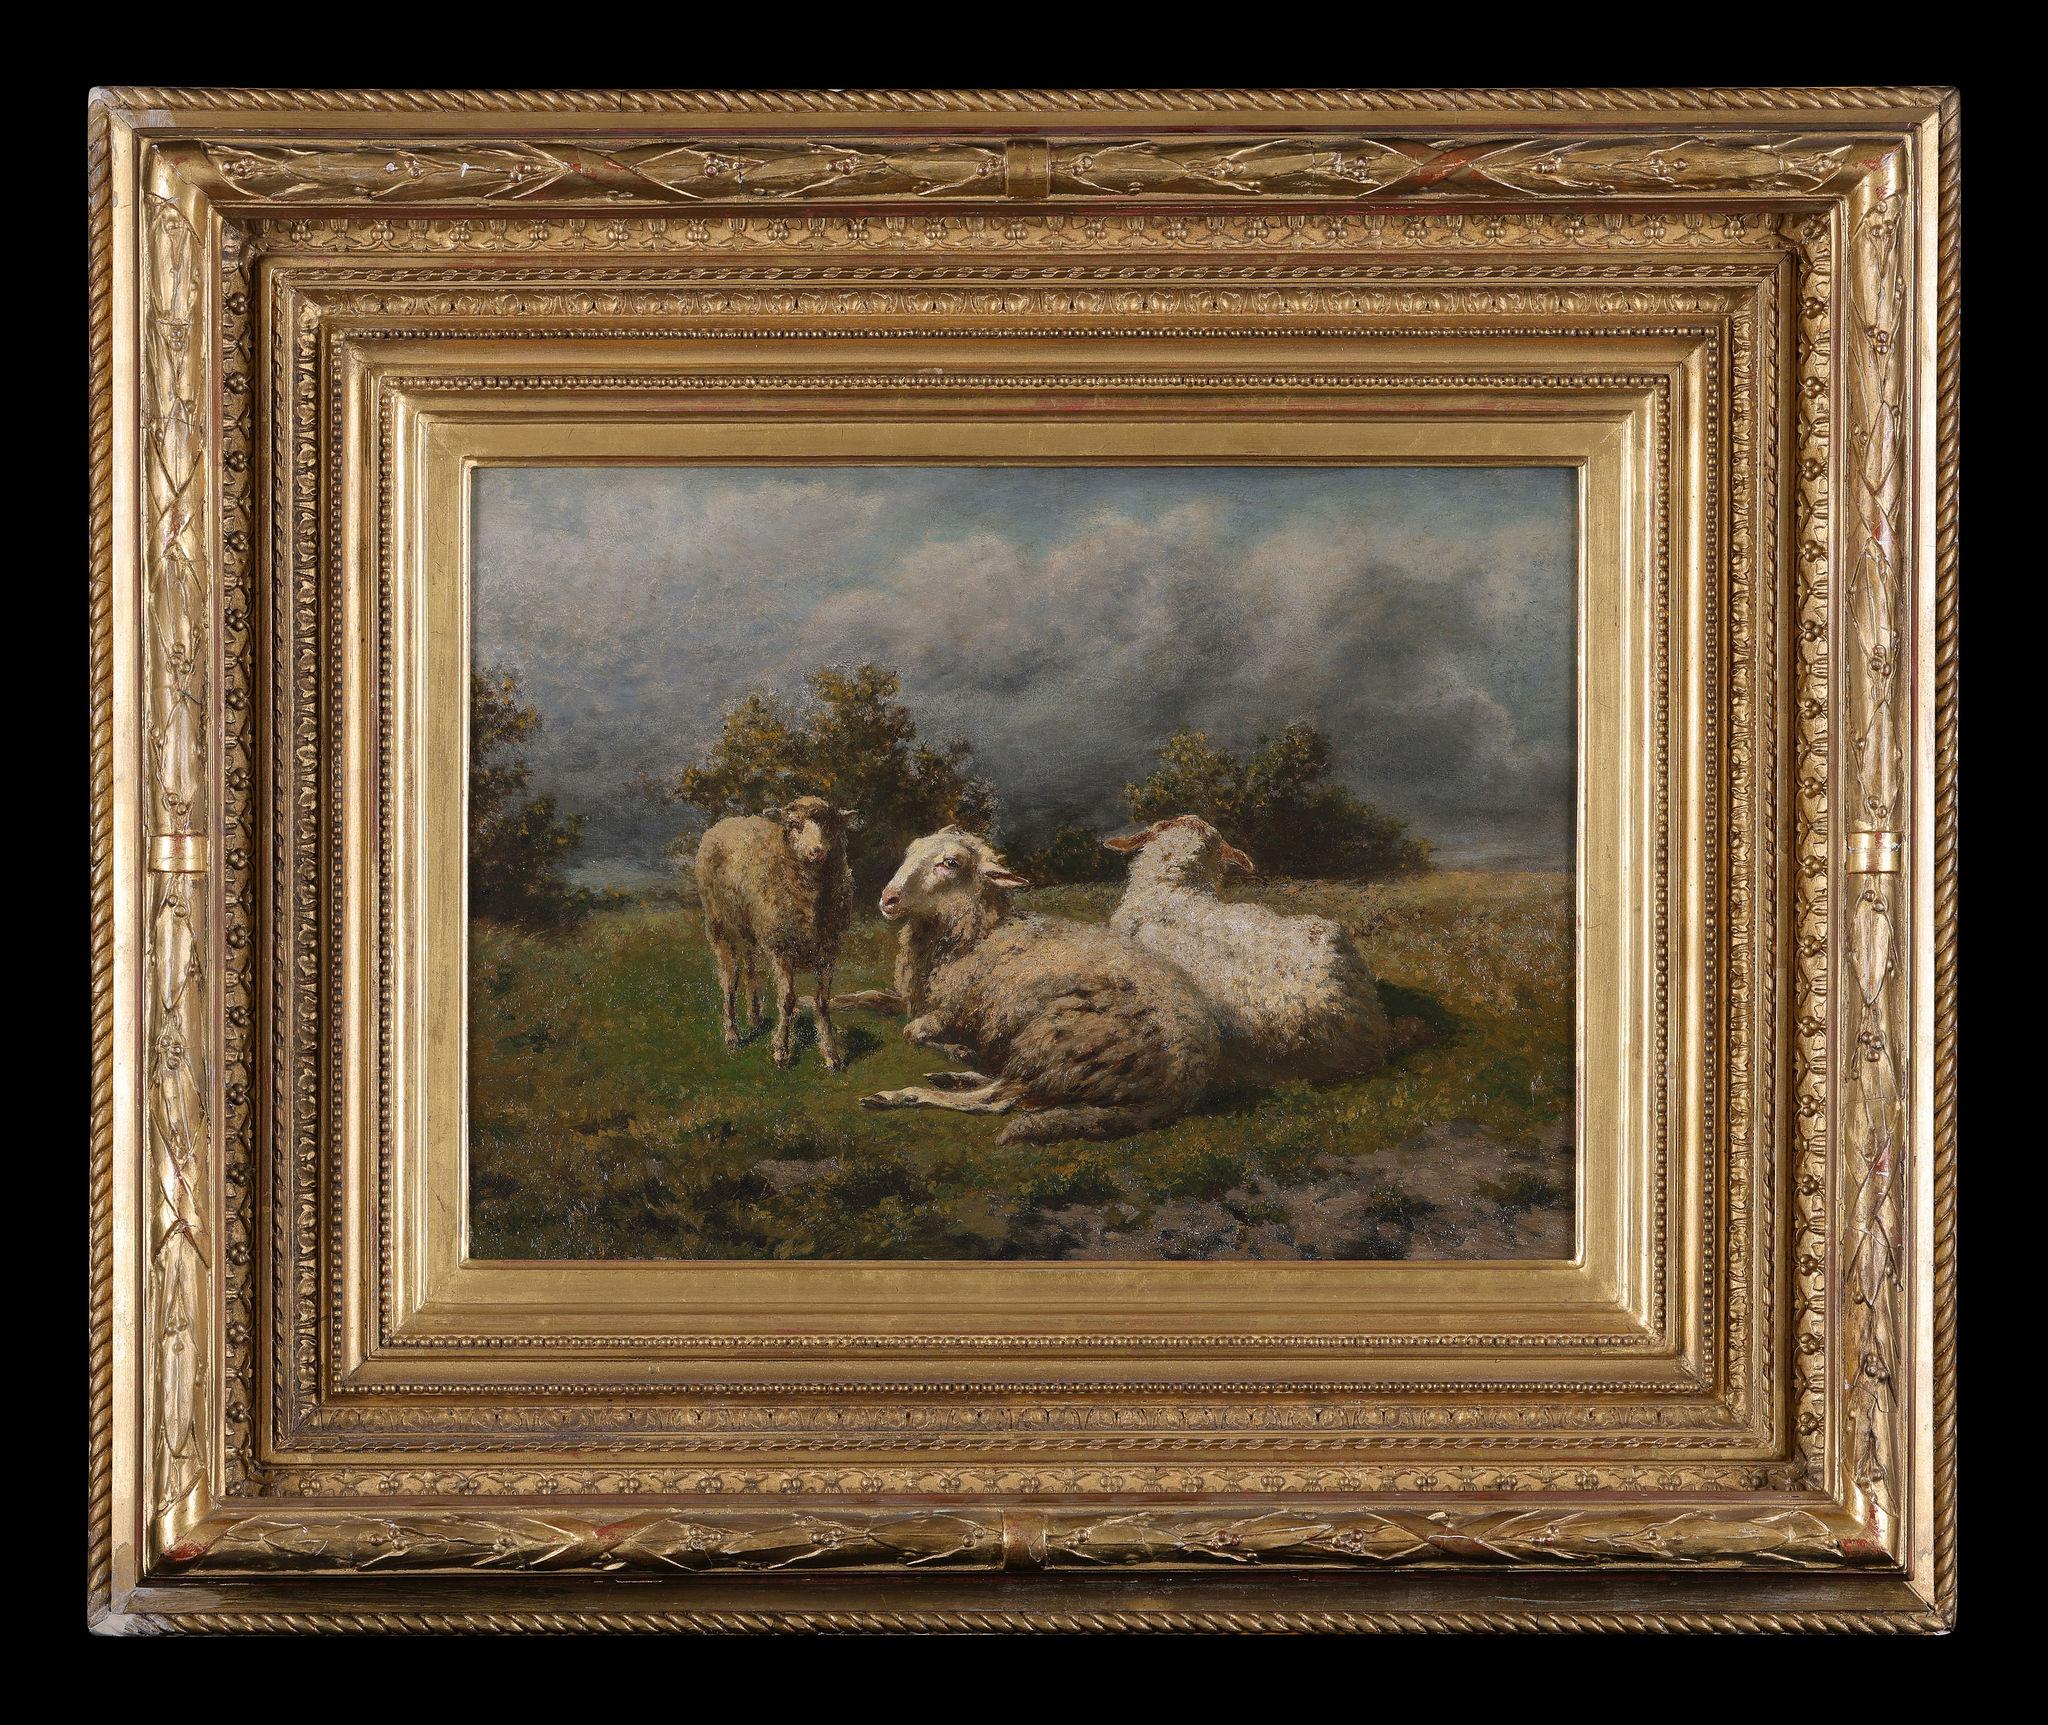 Moutons avec leur agneau - École de Barbizon Painting par Edouard Woutermaertens  